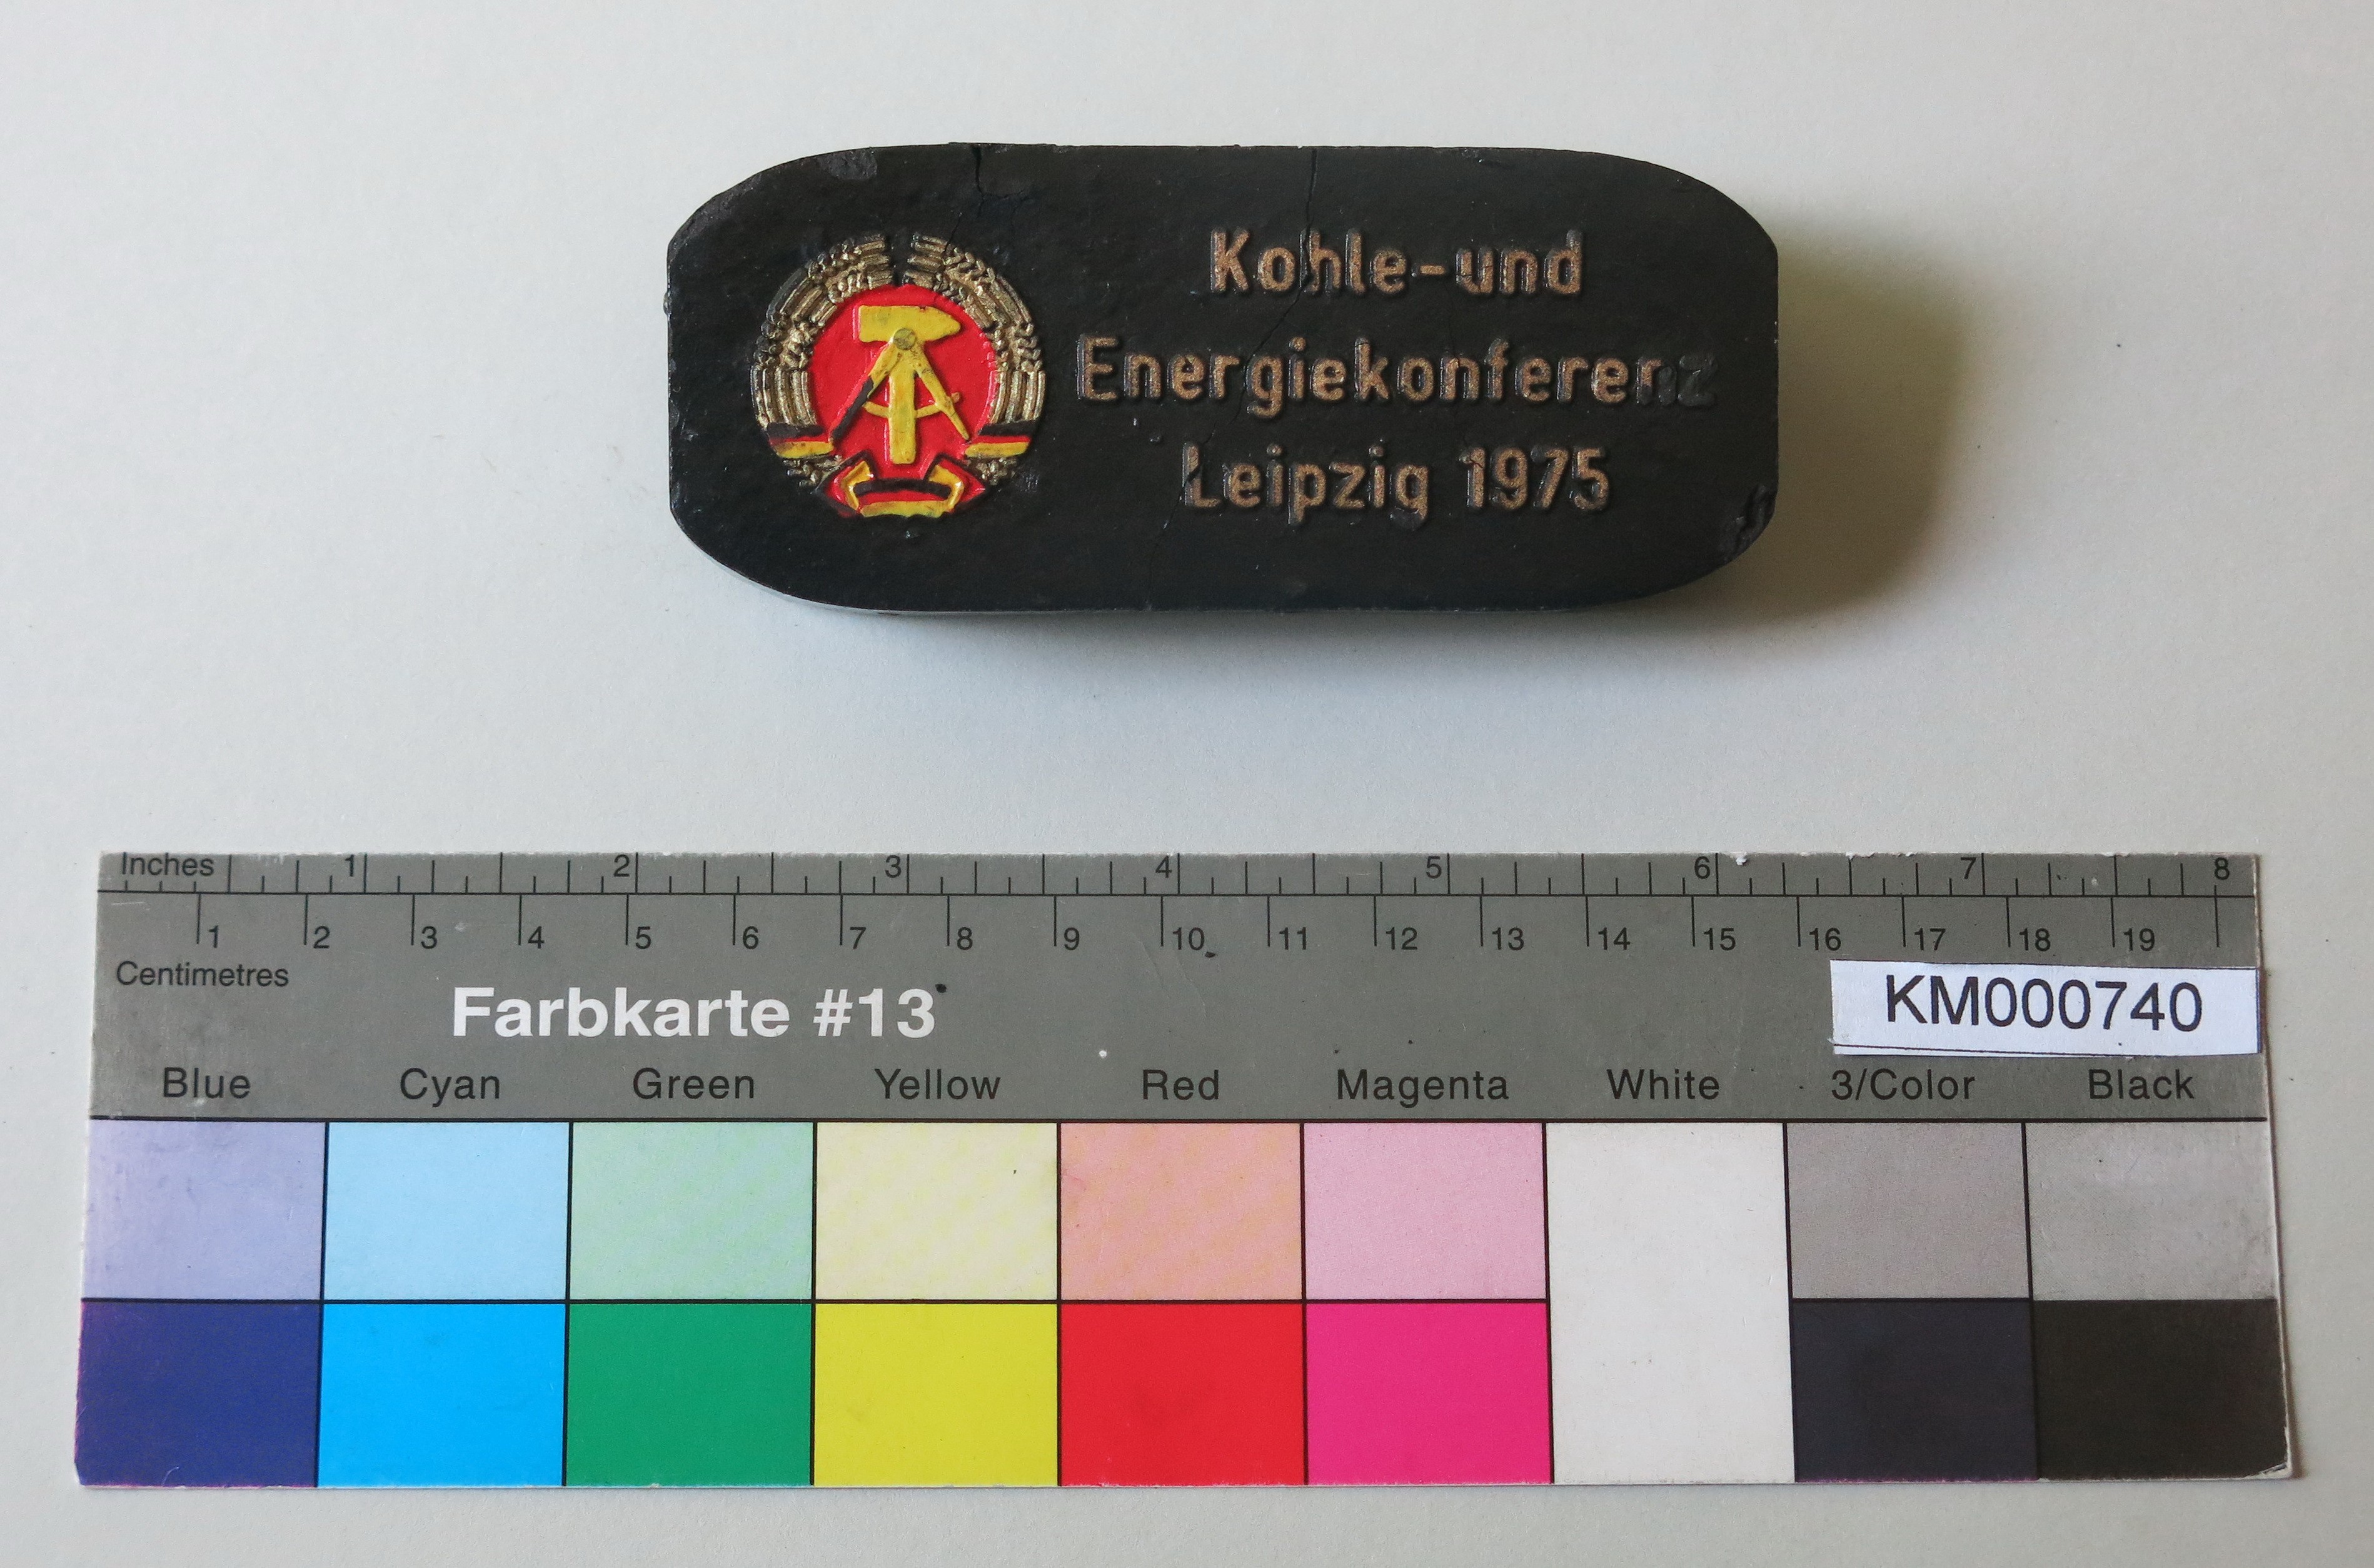 Zierbrikett "Kohle und Energiekonferenz Leipzig 1975" (Energiefabrik Knappenrode CC BY-SA)